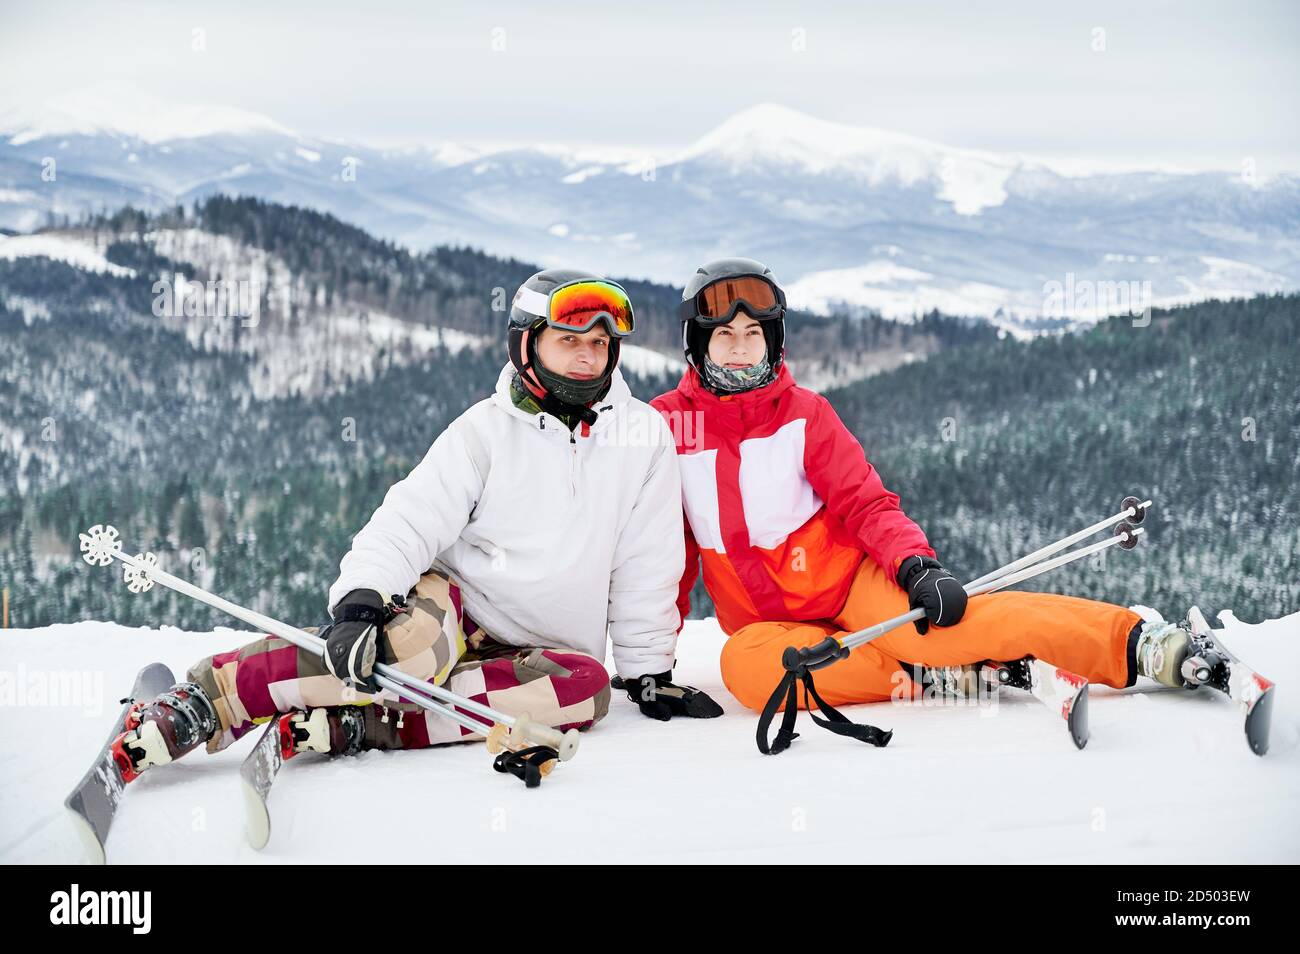 Zwei Freunde in Skianzügen und Skiausrüstung sind in den Winterbergen und genießen schneebedecktes Wetter, Skifahren und unglaubliche Landschaften. Porträt eines Paares, das auf einem verschneiten Hügel sitzt und lächelt und die Kamera anschaut Stockfoto